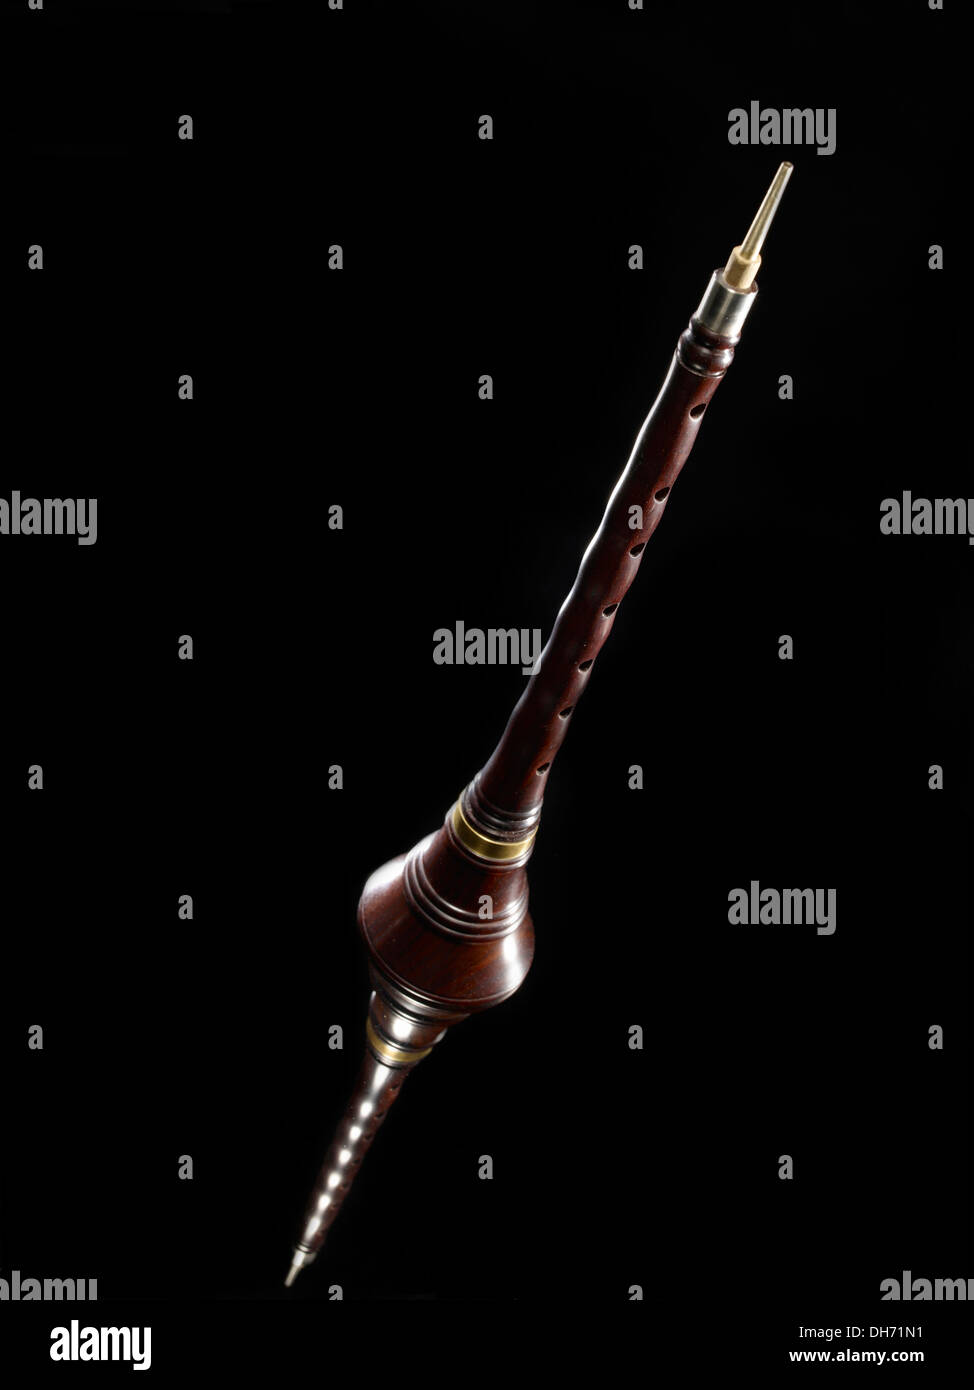 Suona, Chinese horn, Chinese instrument Stock Photo - Alamy